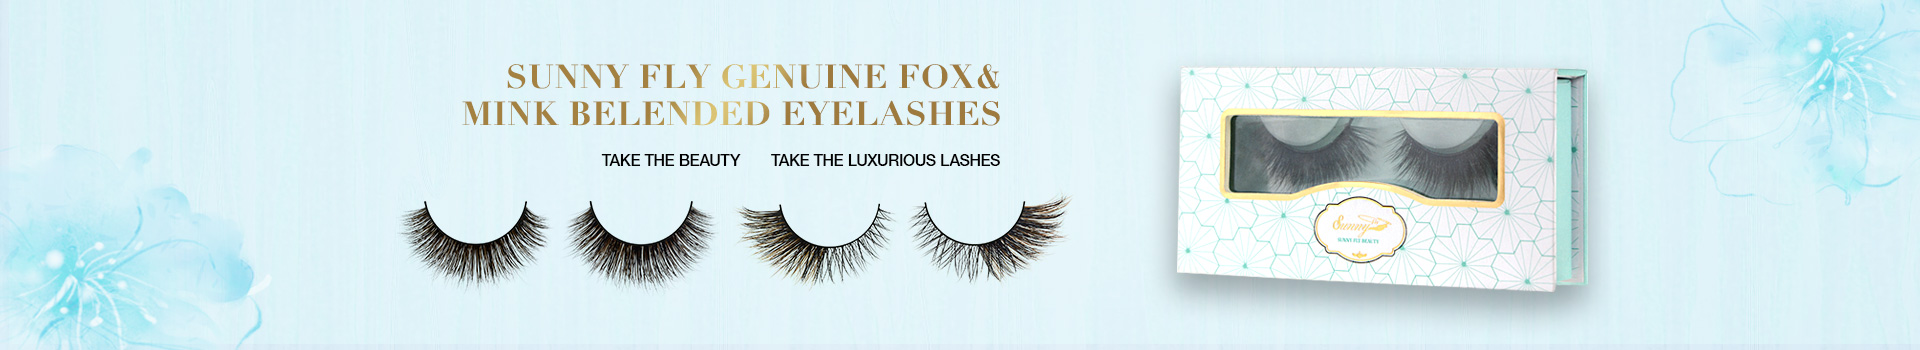 Fox & Mink Fur Blended Eyelashes FMB07